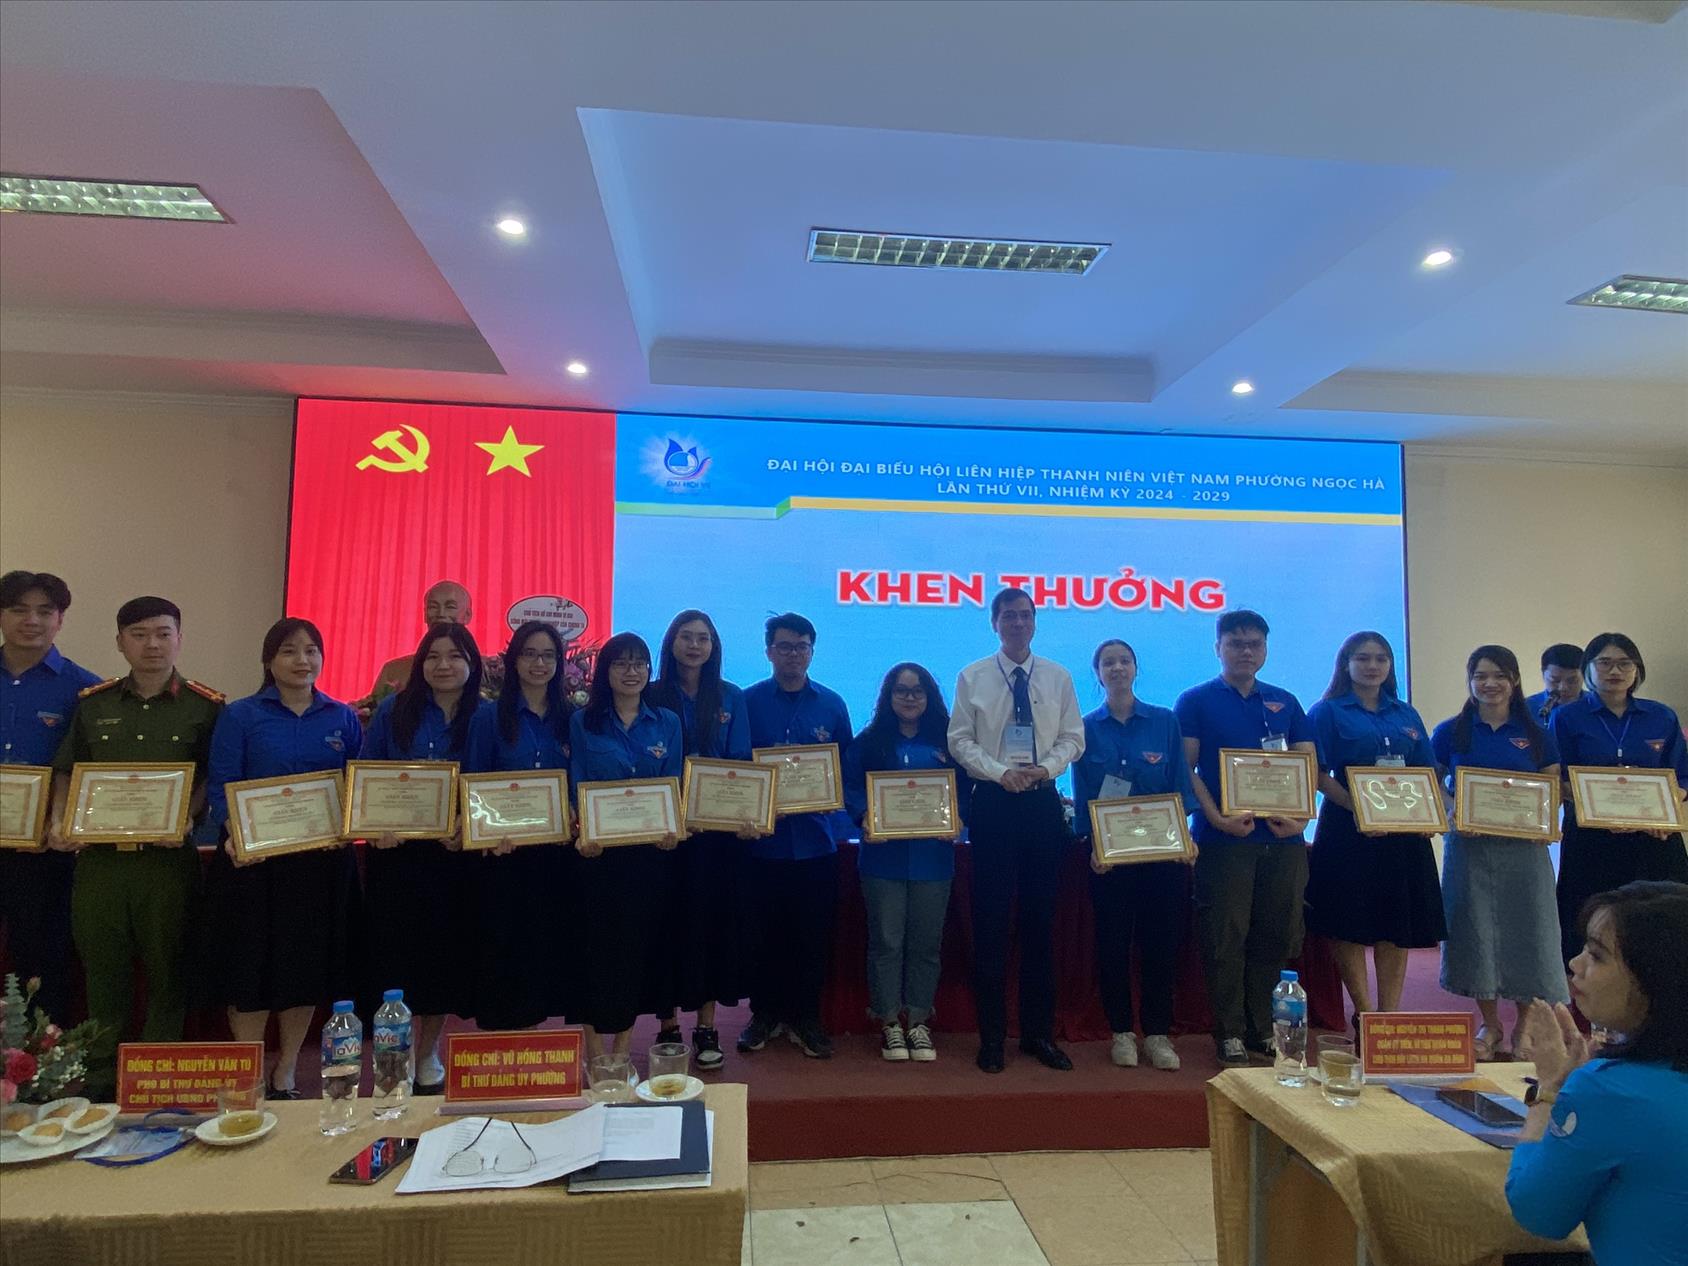 Chi hội trường THCS Ba Đình đạt thành tích xuất sắc trong công tác Hội Liên hiệp Thanh niên Việt Nam phường Ngọc Hà nhiệm kì 2019 - 2024